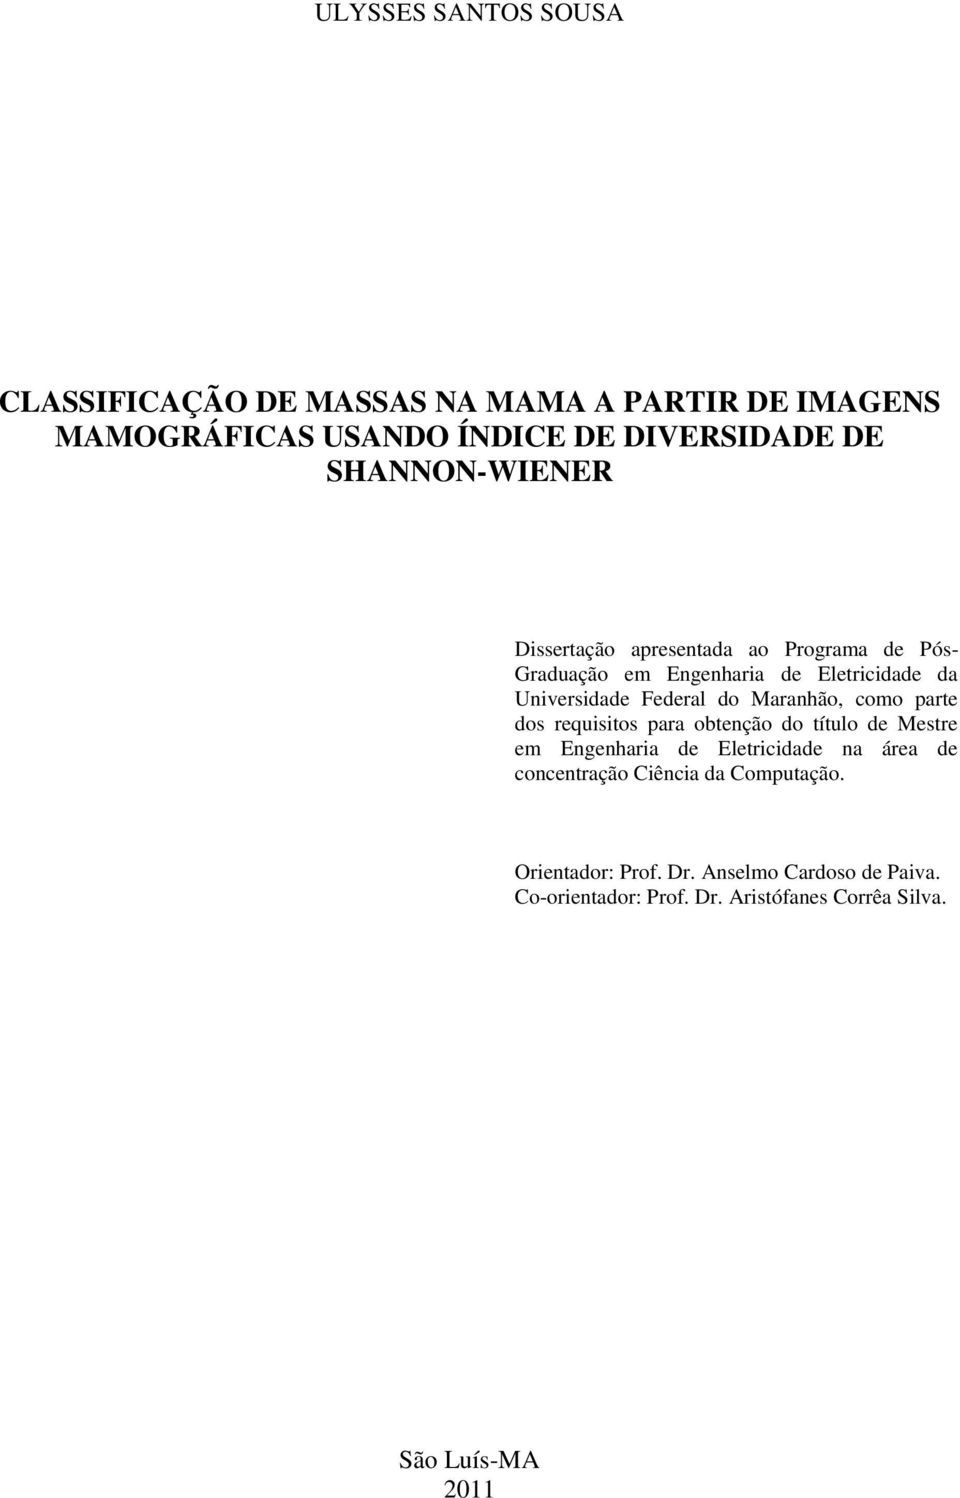 Maranhão, como parte dos requisitos para obtenção do título de Mestre em Engenharia de Eletricidade na área de concentração